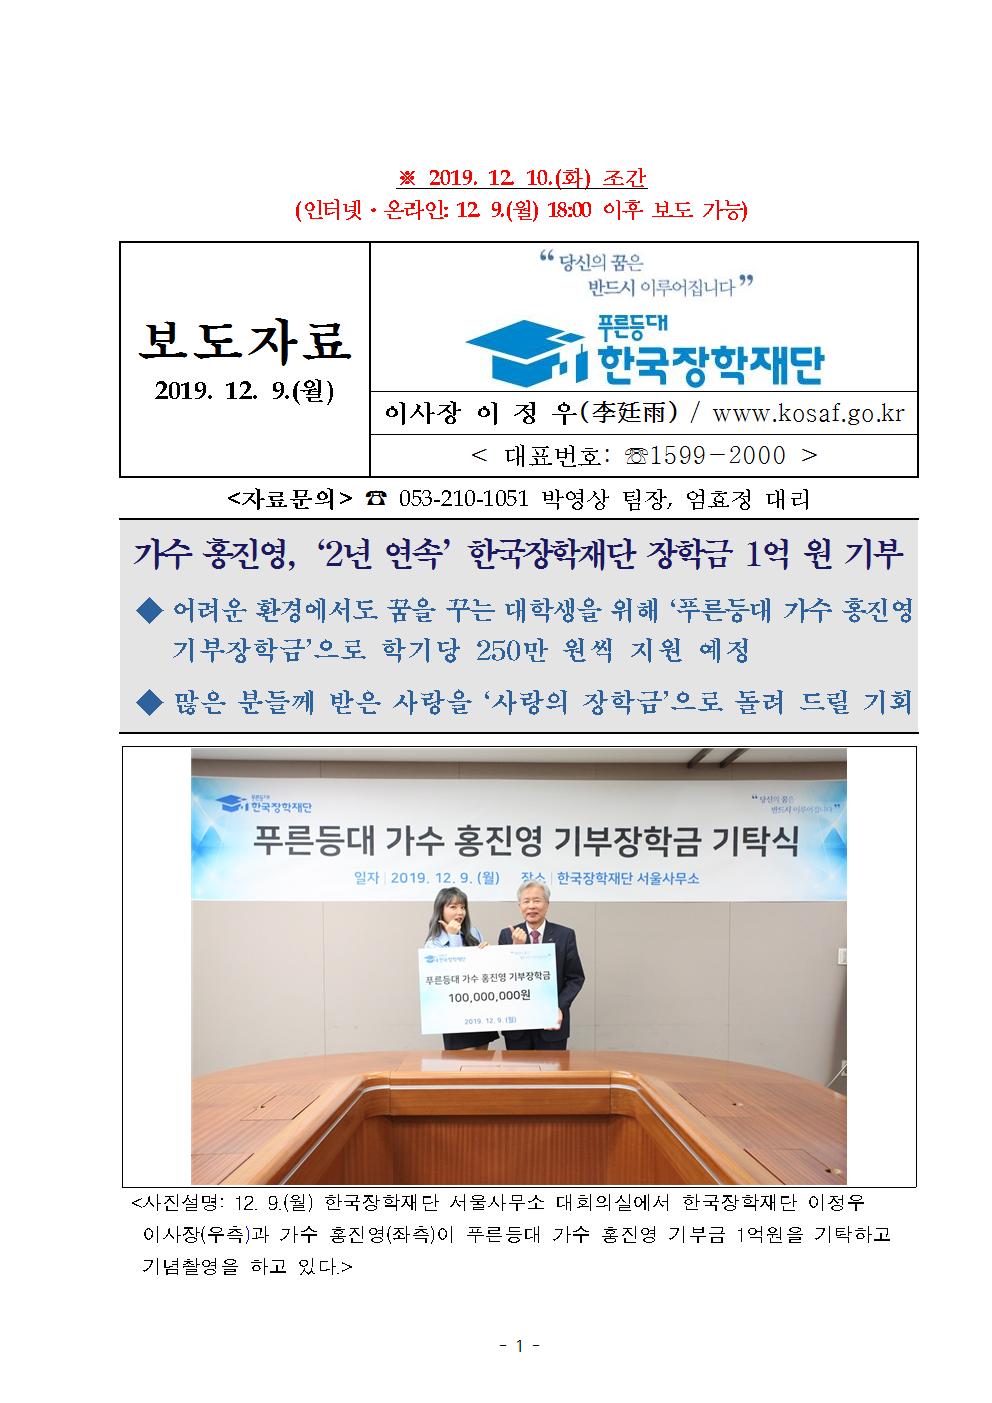 12-09(월)[보도자료] 가수 홍진영, 2년 연속 한국장학재단 장학금 1억 원 기부001.jpg